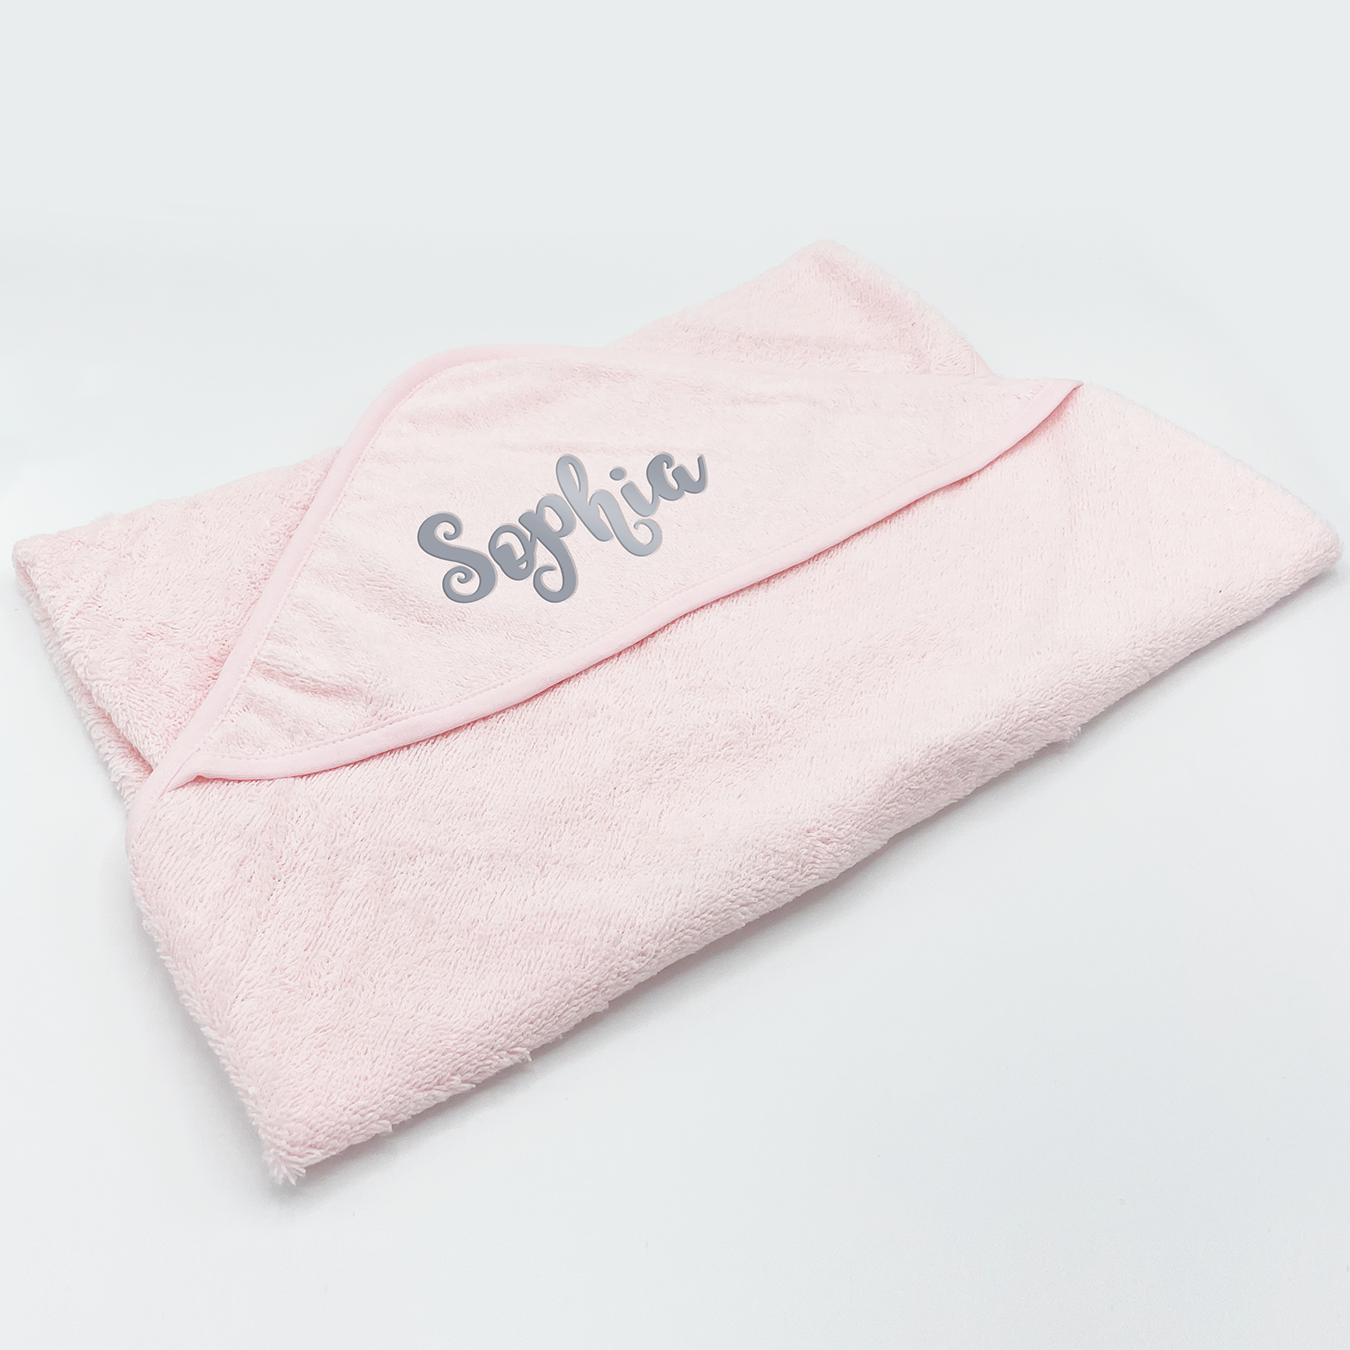 Pink hooded towel